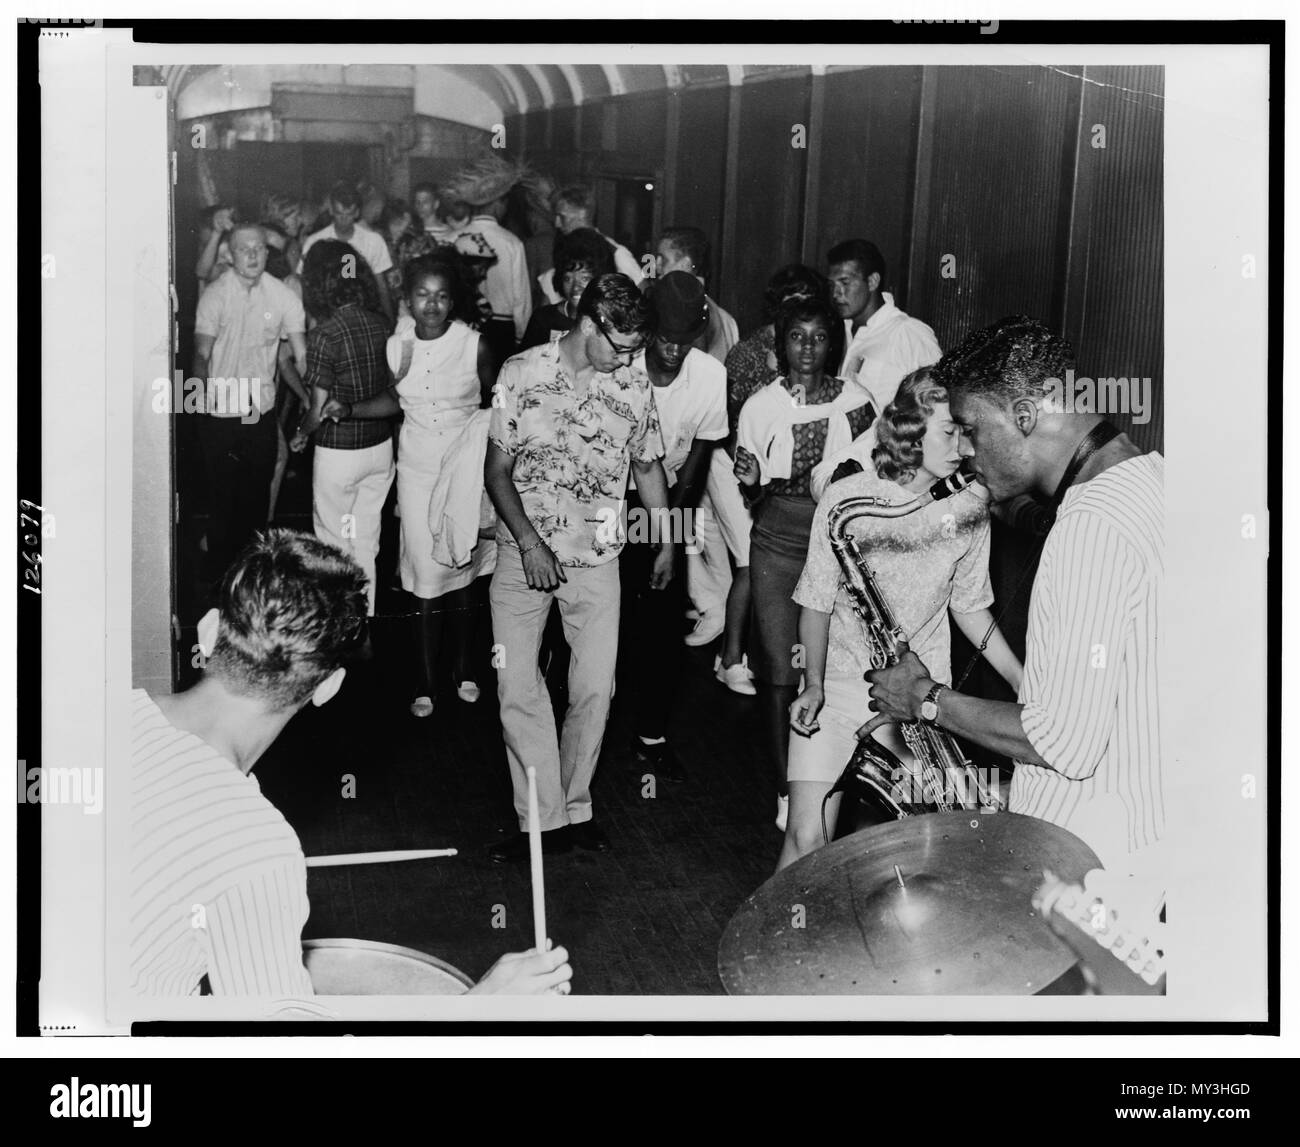 Les adolescents sur un voyage de classe à Montauk le twist danse au rythme d'un fourgon à bande, Montauk, New York, 1962. Photo par Herman Hiller. Banque D'Images